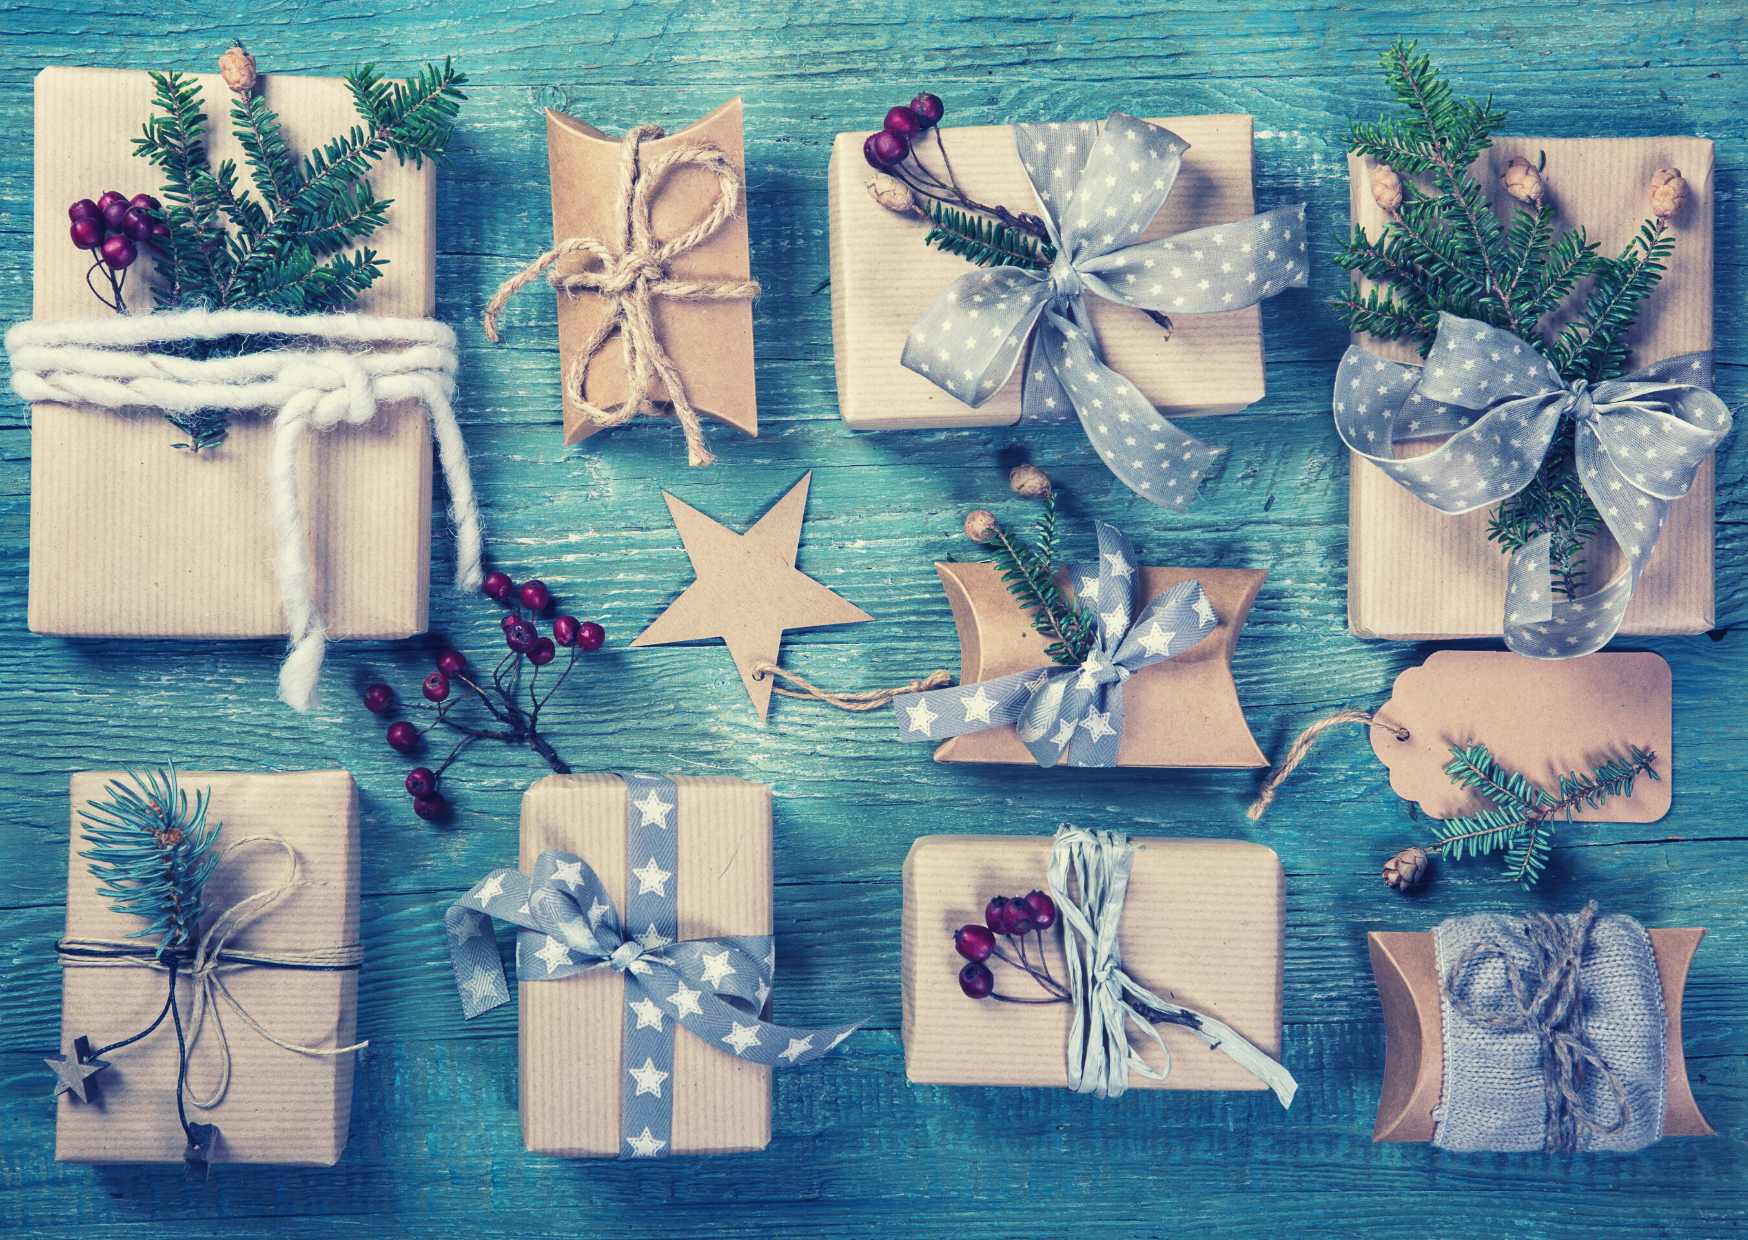 Quanti regali ti aspettano nel anno nuovo?